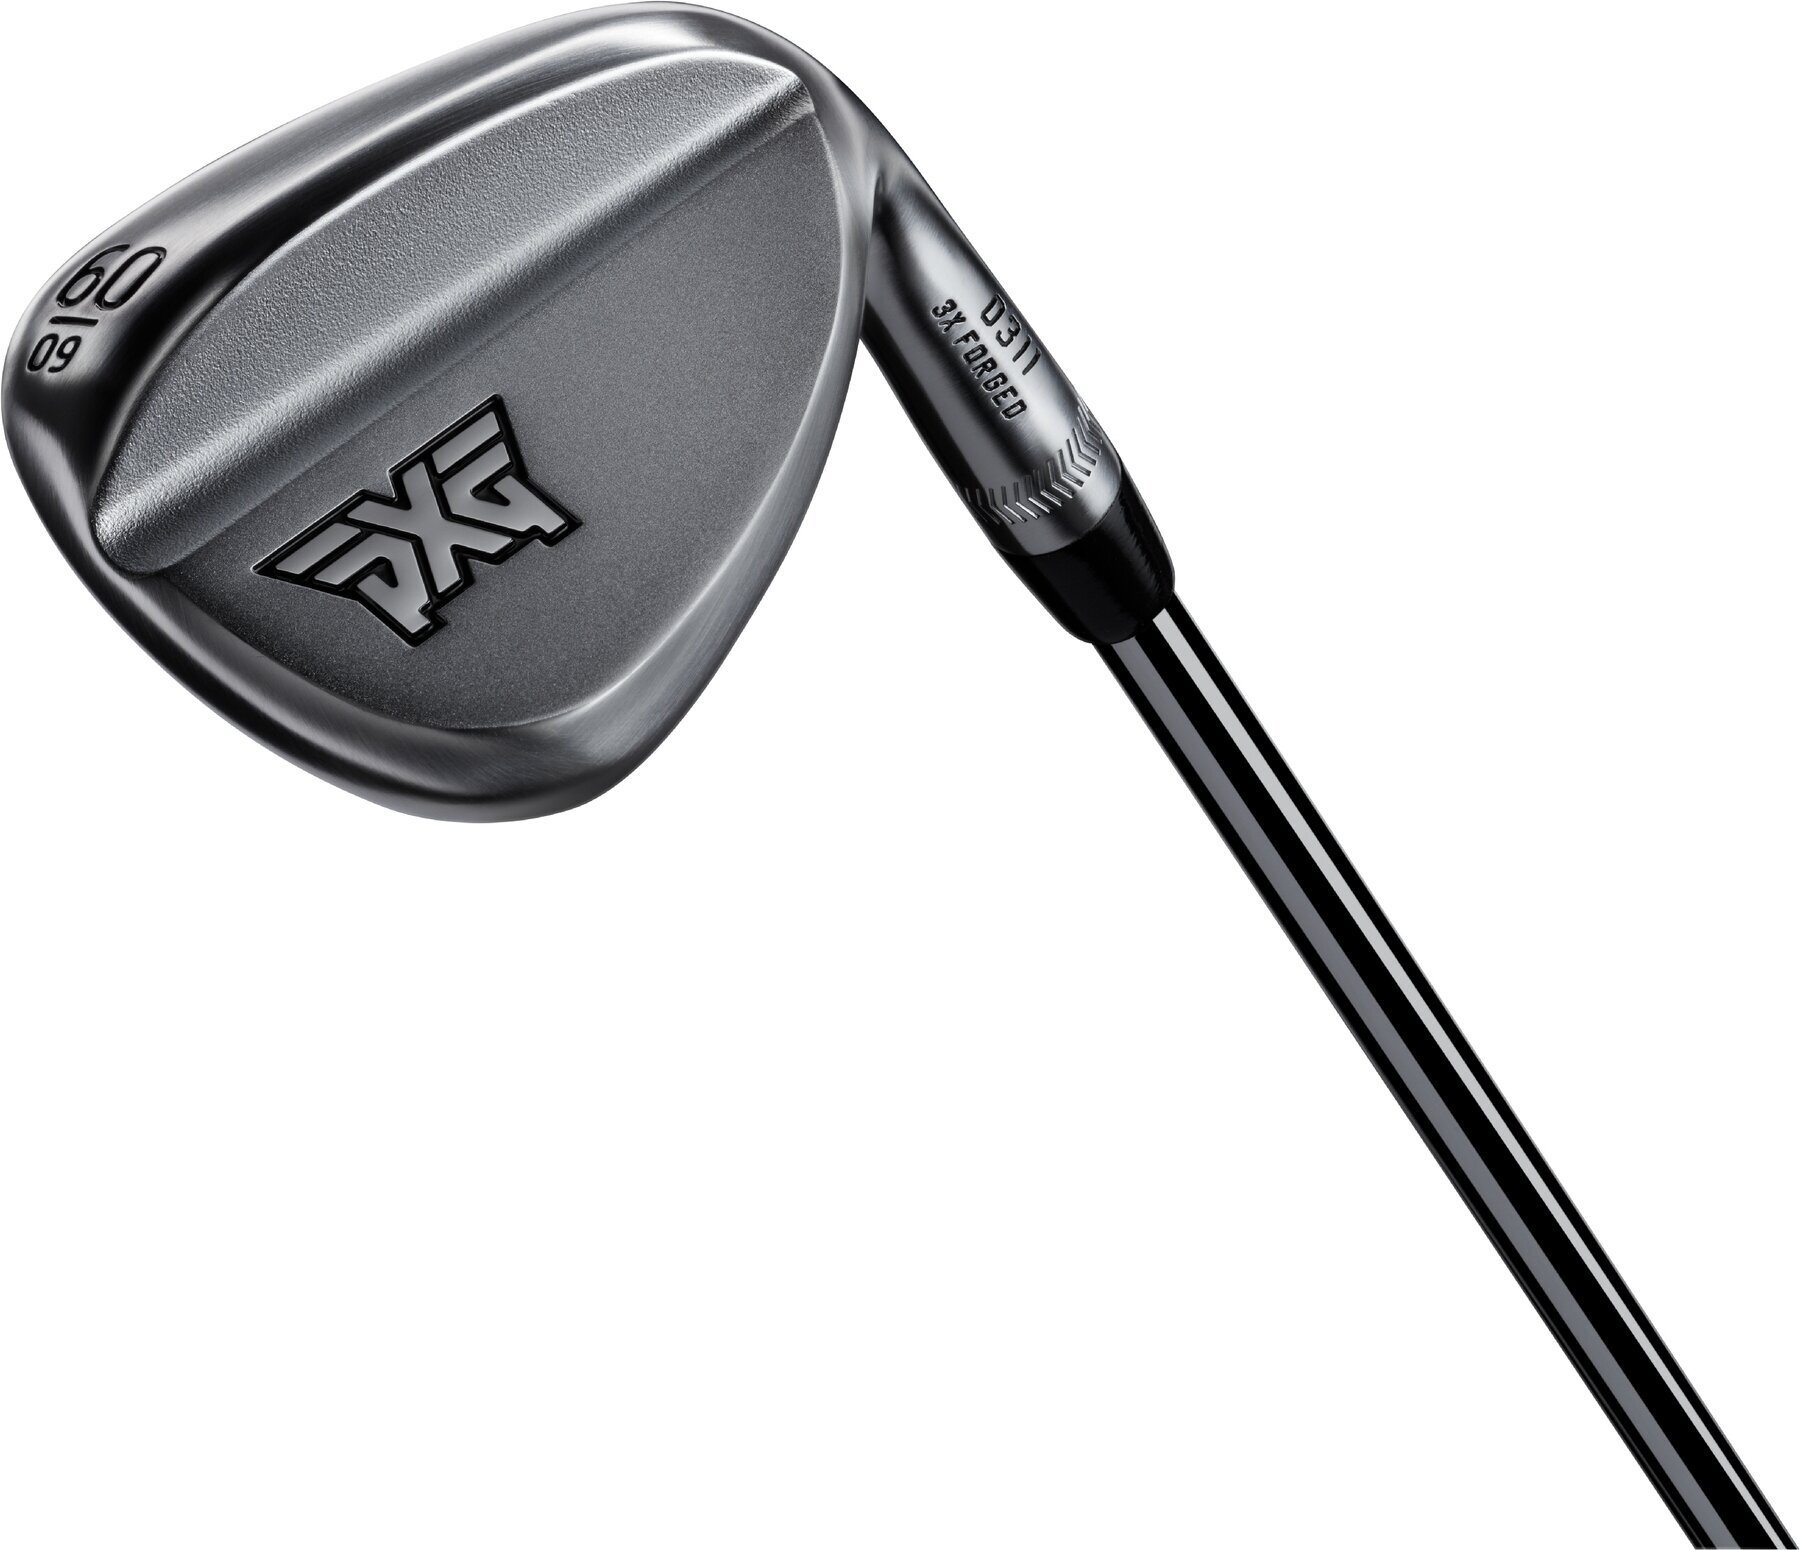 Golfklubb - Wedge PXG V3 0311 Forged Chrome Golfklubb - Wedge